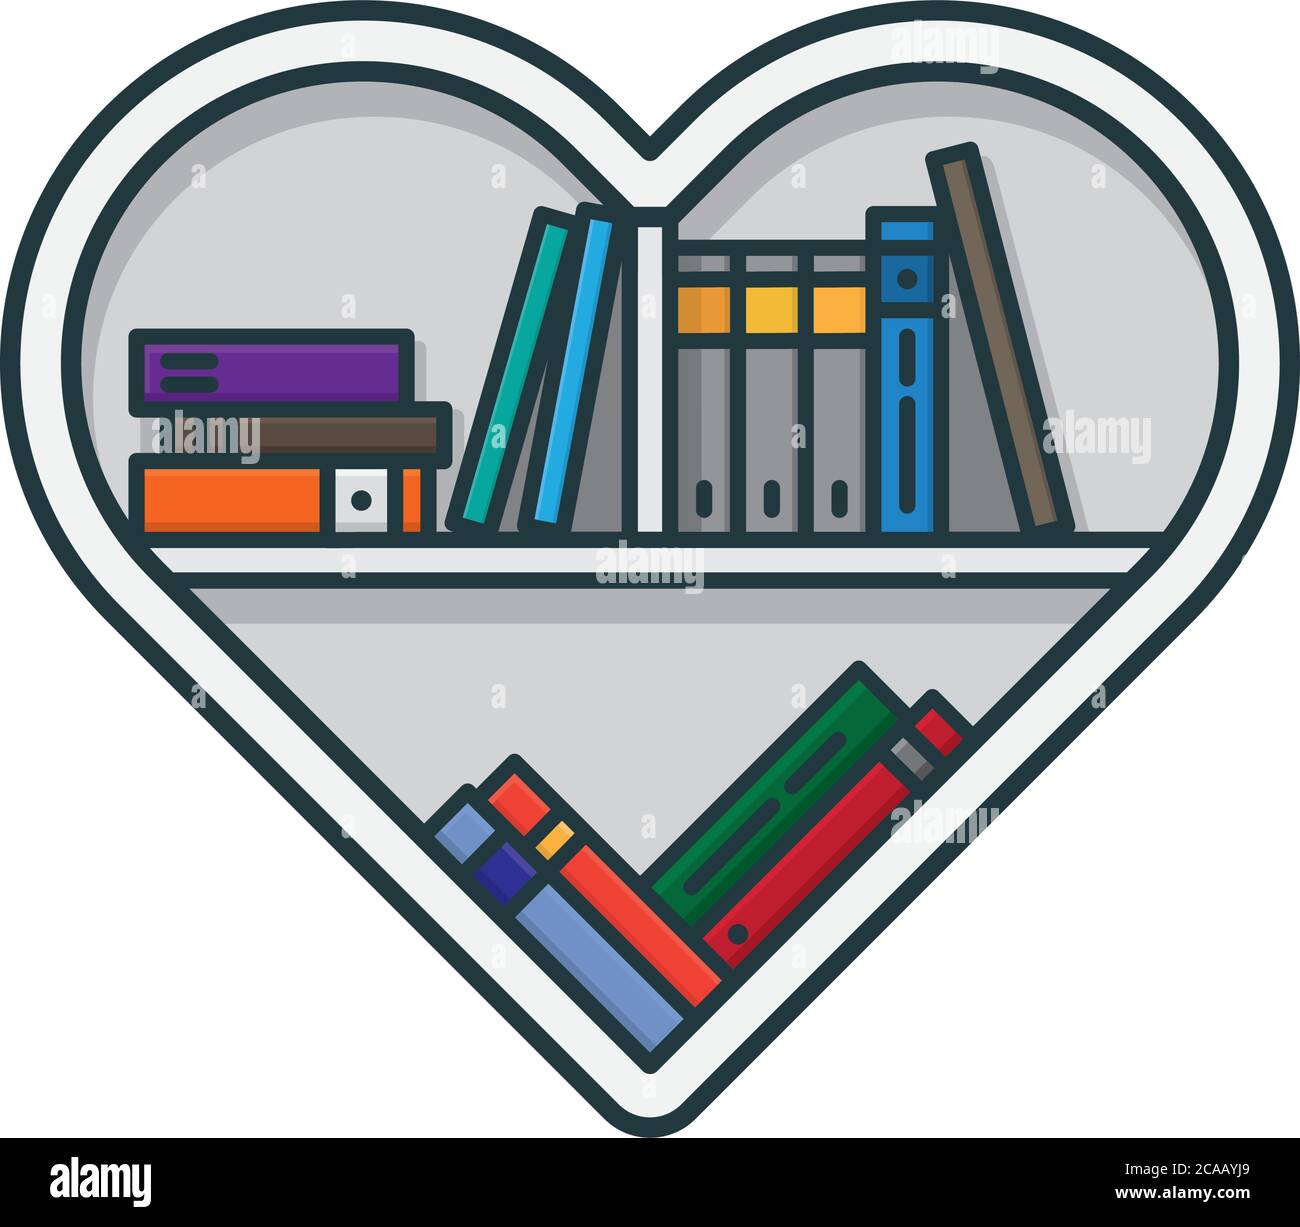 Herzförmiges Bücherregal mit verschiedenen Büchern isolierte Vektor-Illustration für Book Lovers Day am 9. August. Symbol für Würdigung der Literatur. Stock Vektor